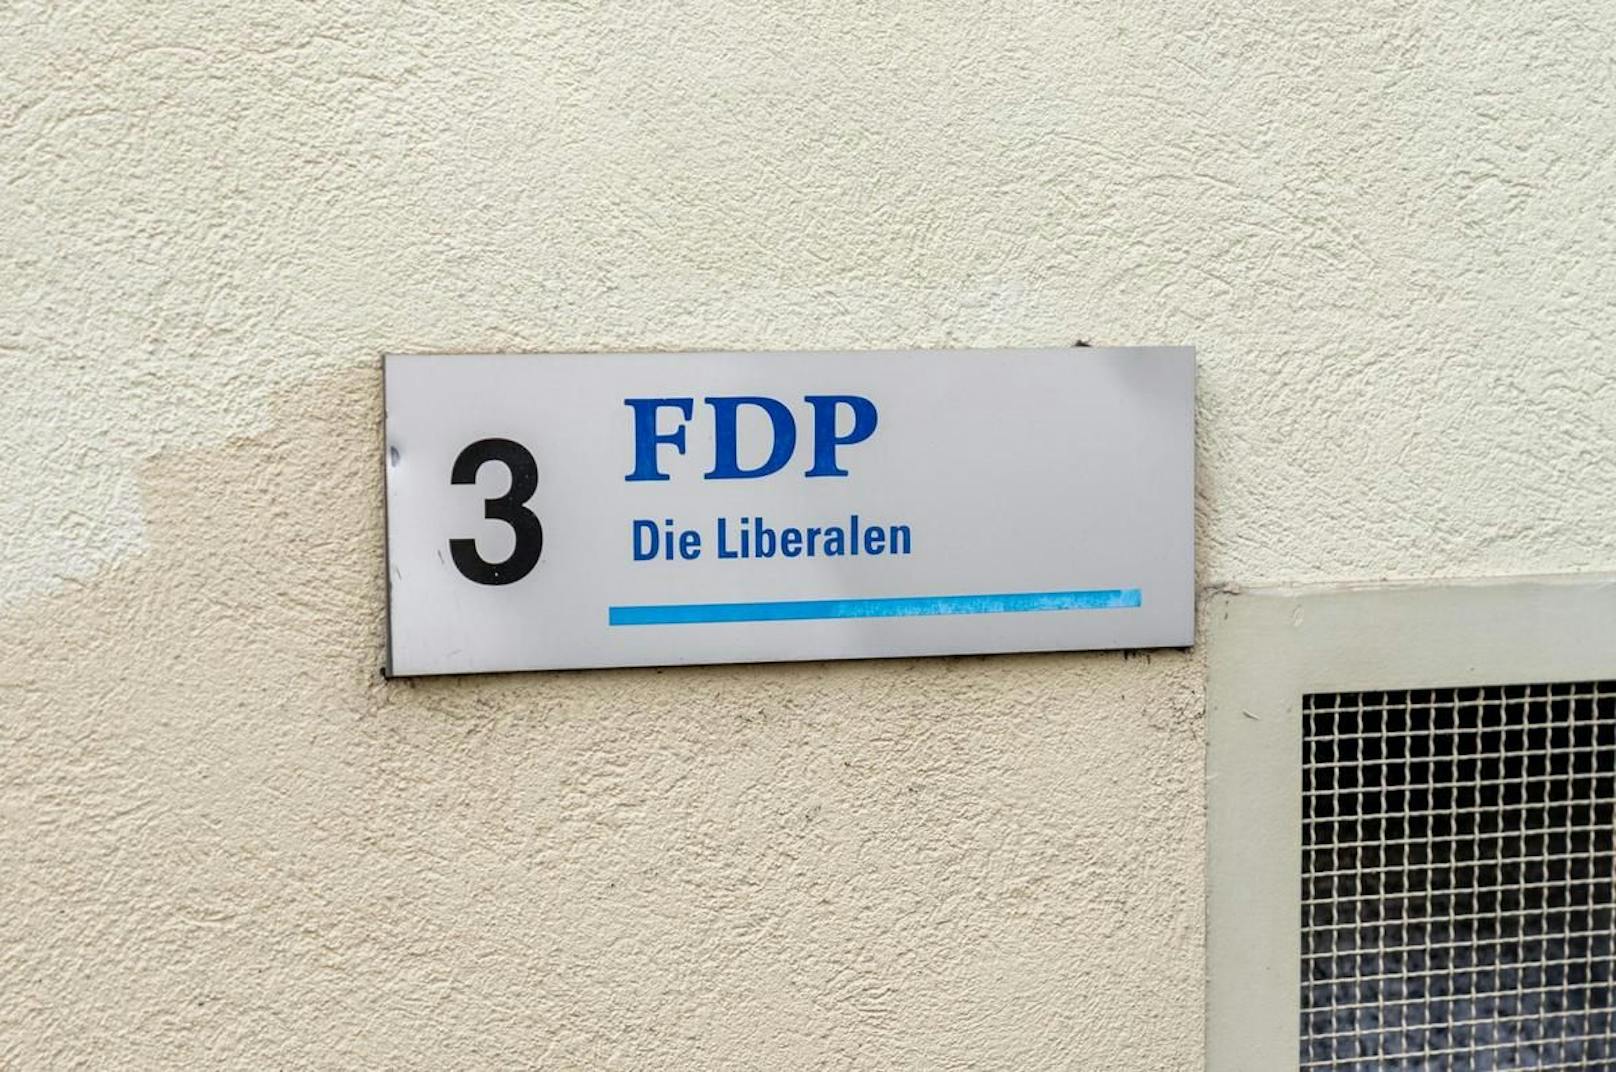 "Wir bleiben dabei, die Tests für asymptomatische Personen müssen ab Oktober kostenpflichtig sein", twitterte die FDP.